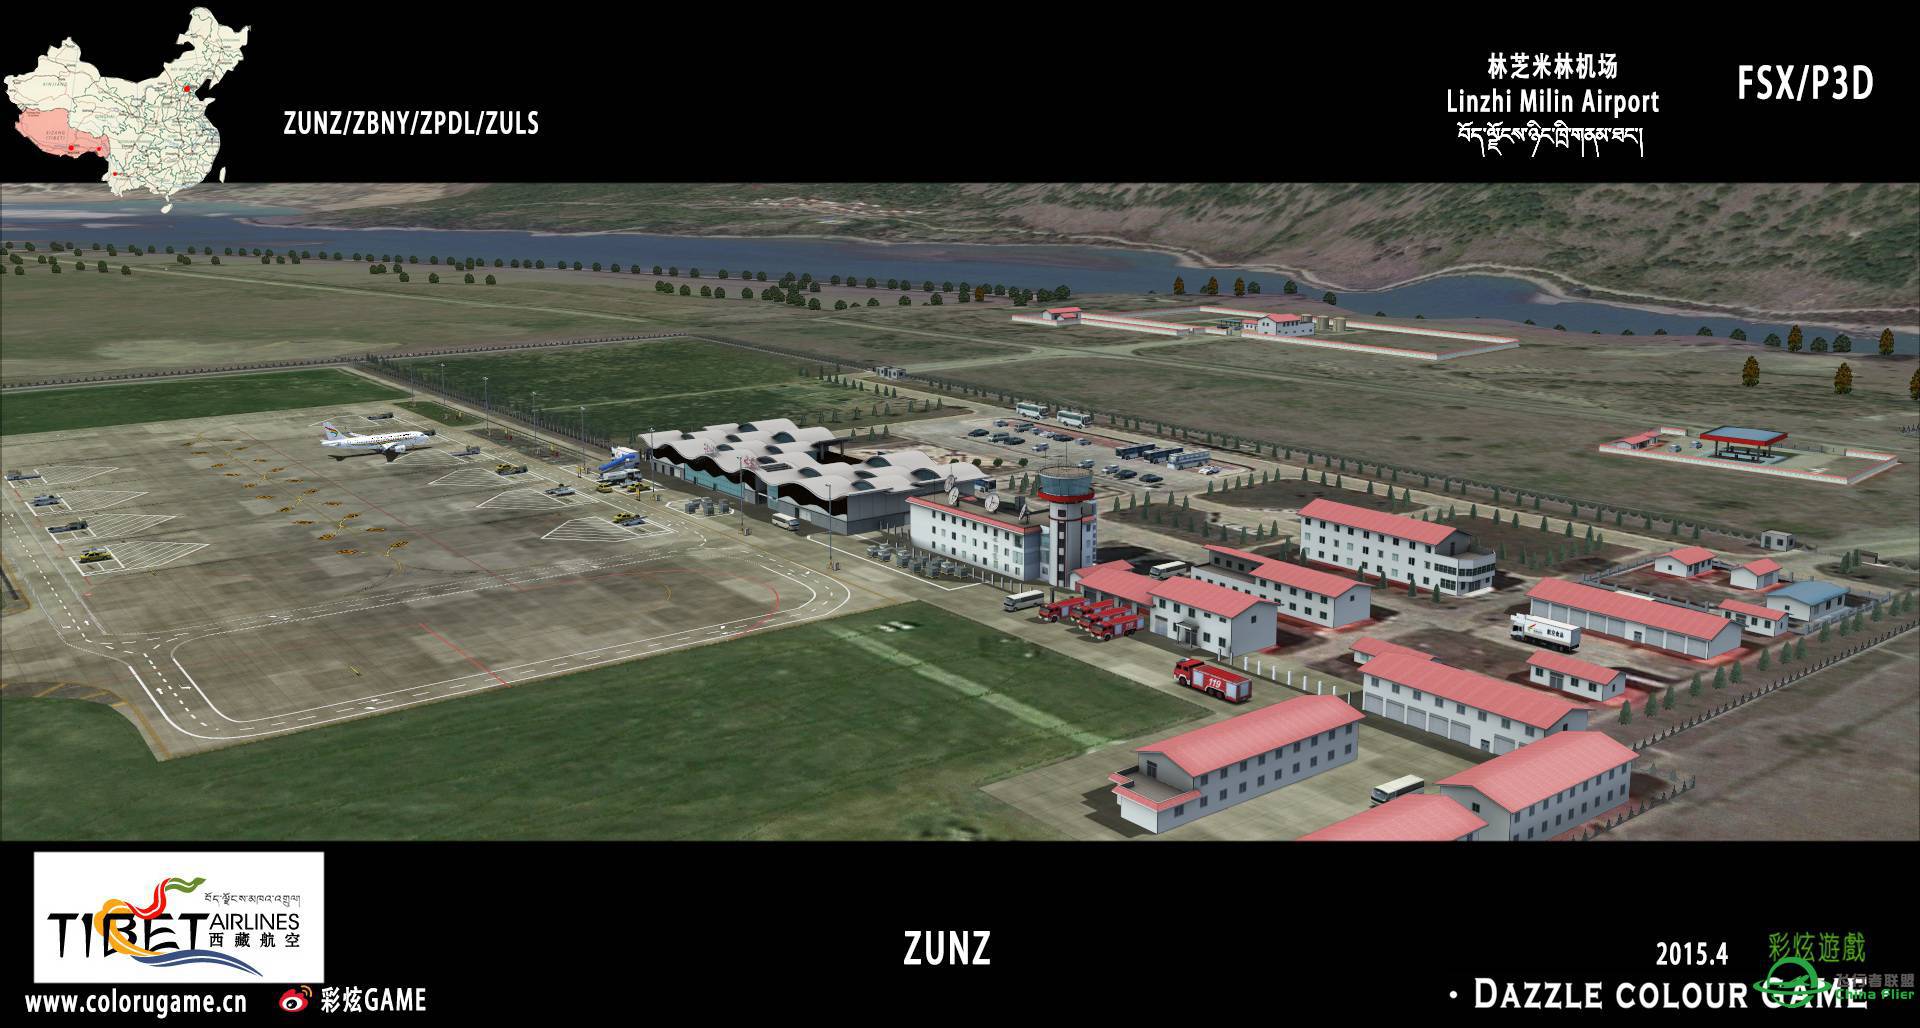 彩炫地景：林芝米林机场（ZUNZ）正式发布！-8557 